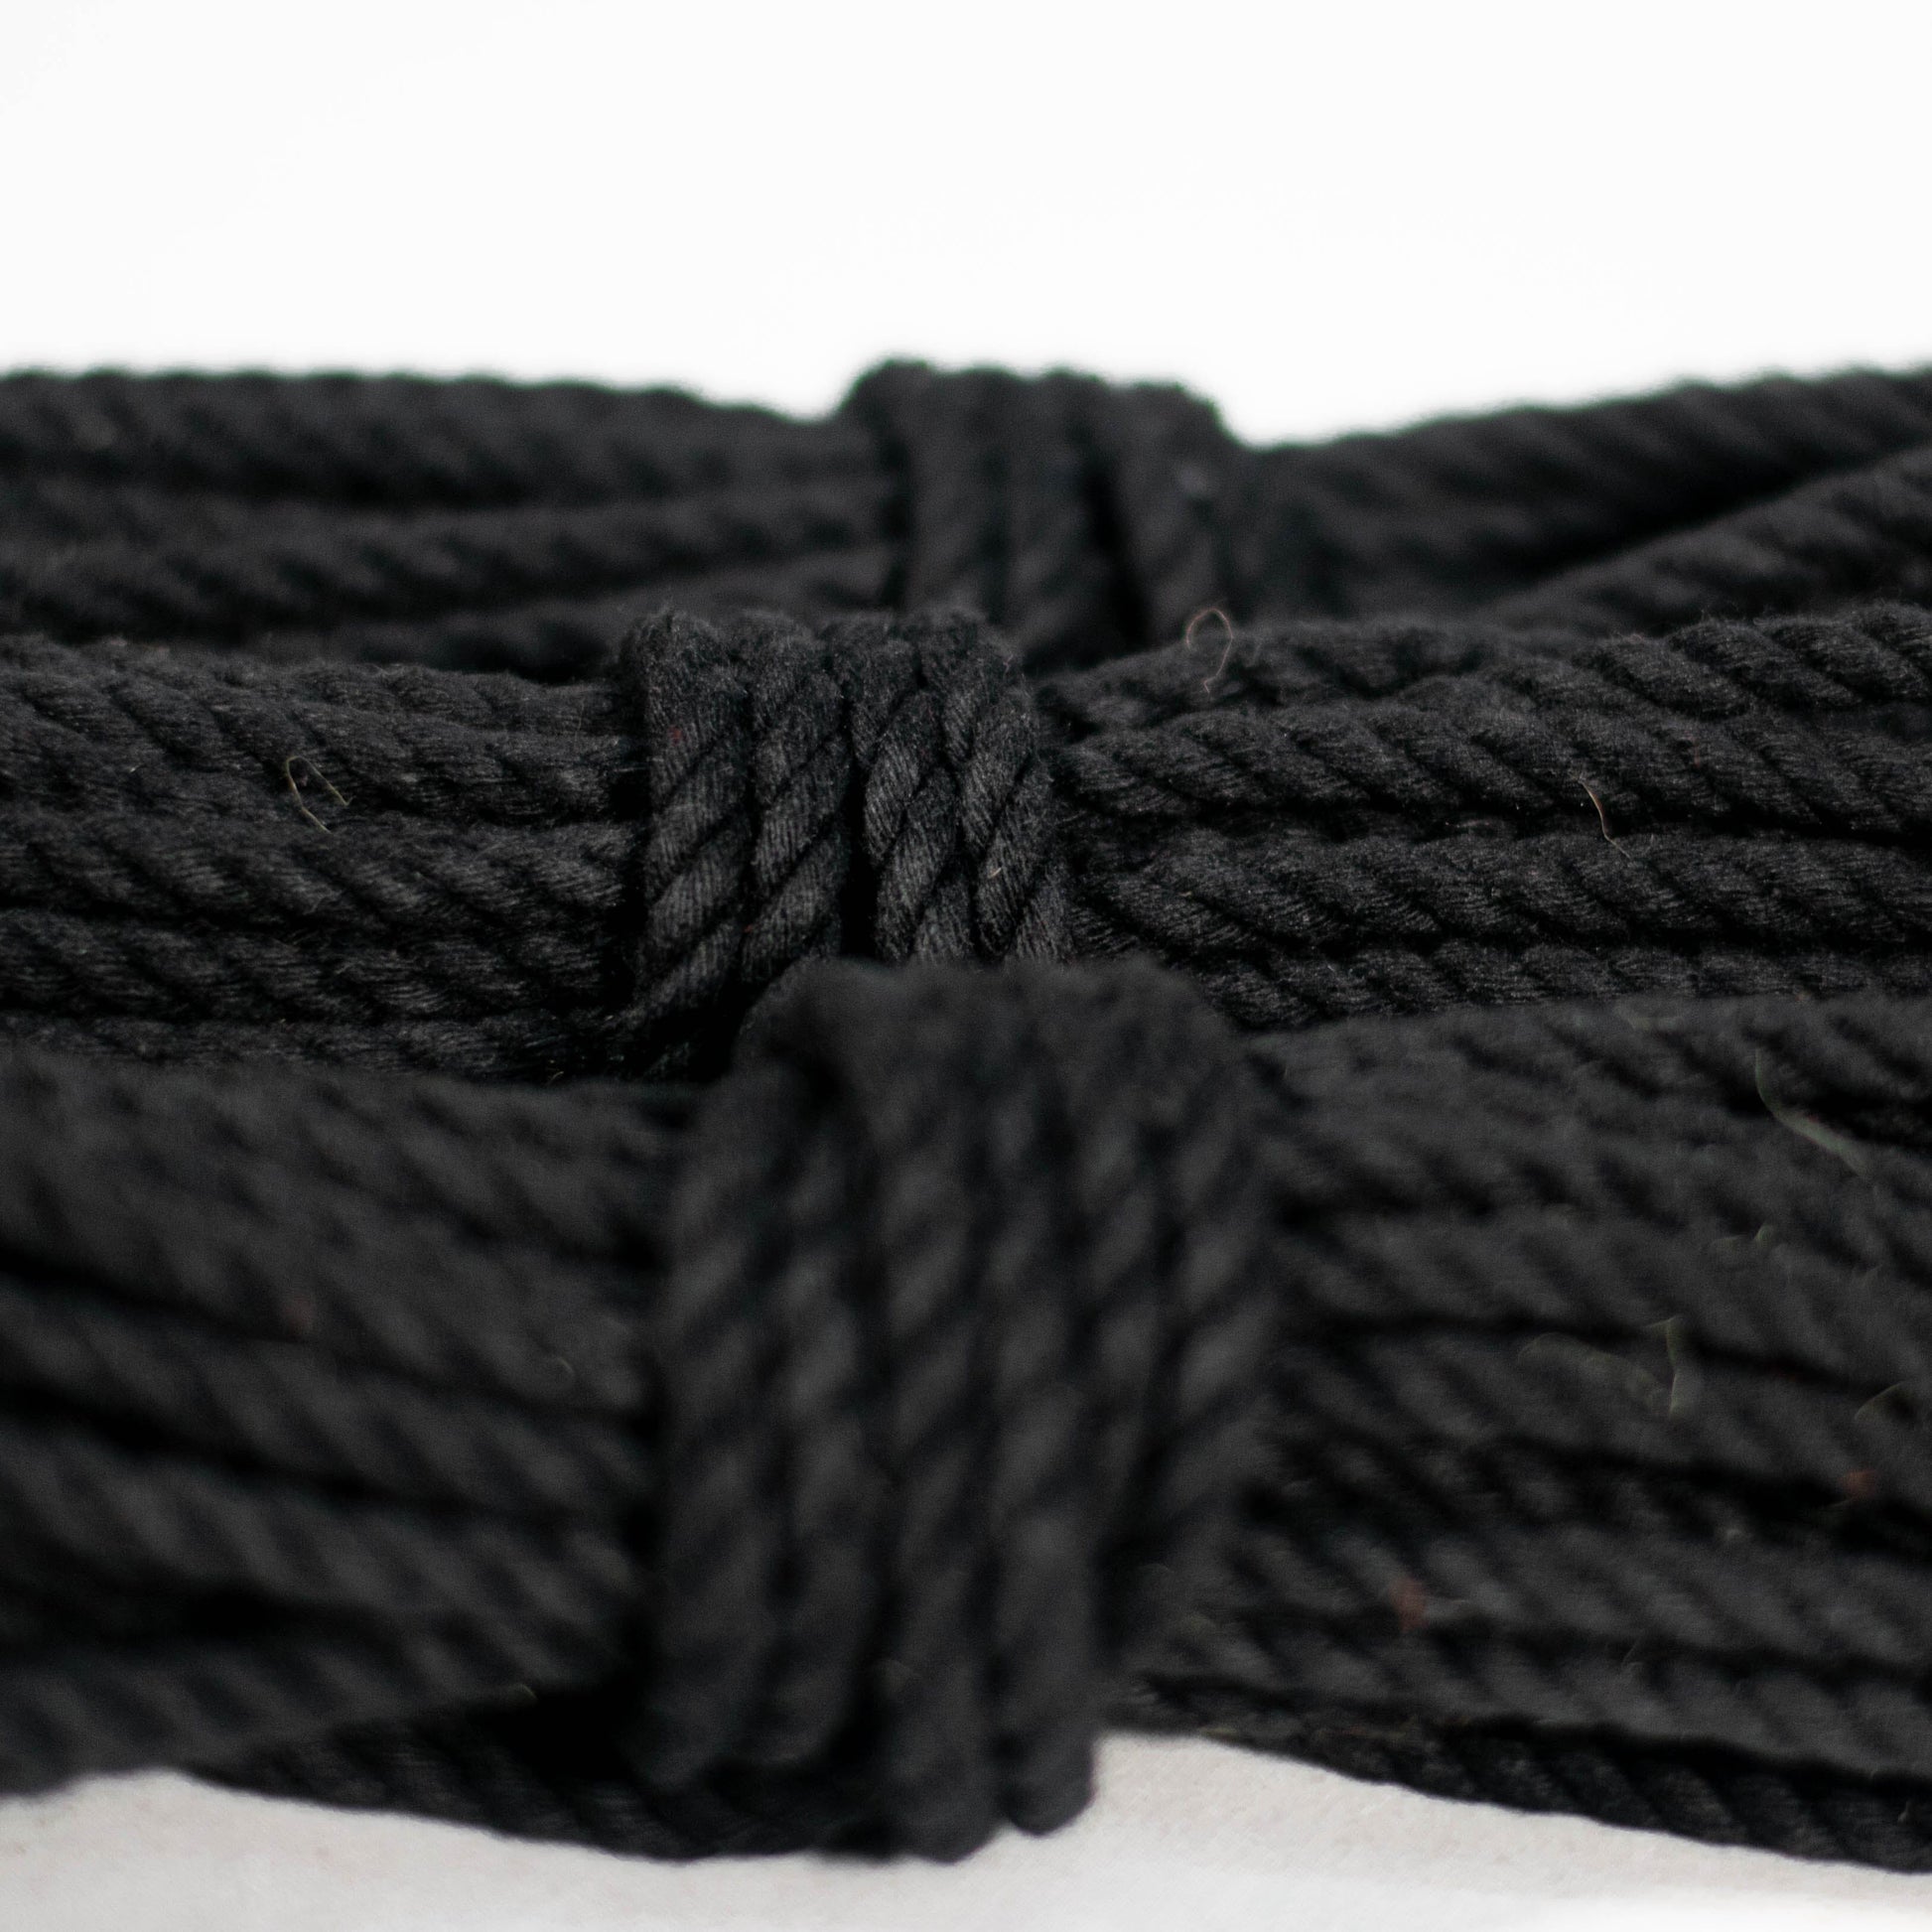 Cotton Play Ropes Shibari Rope 